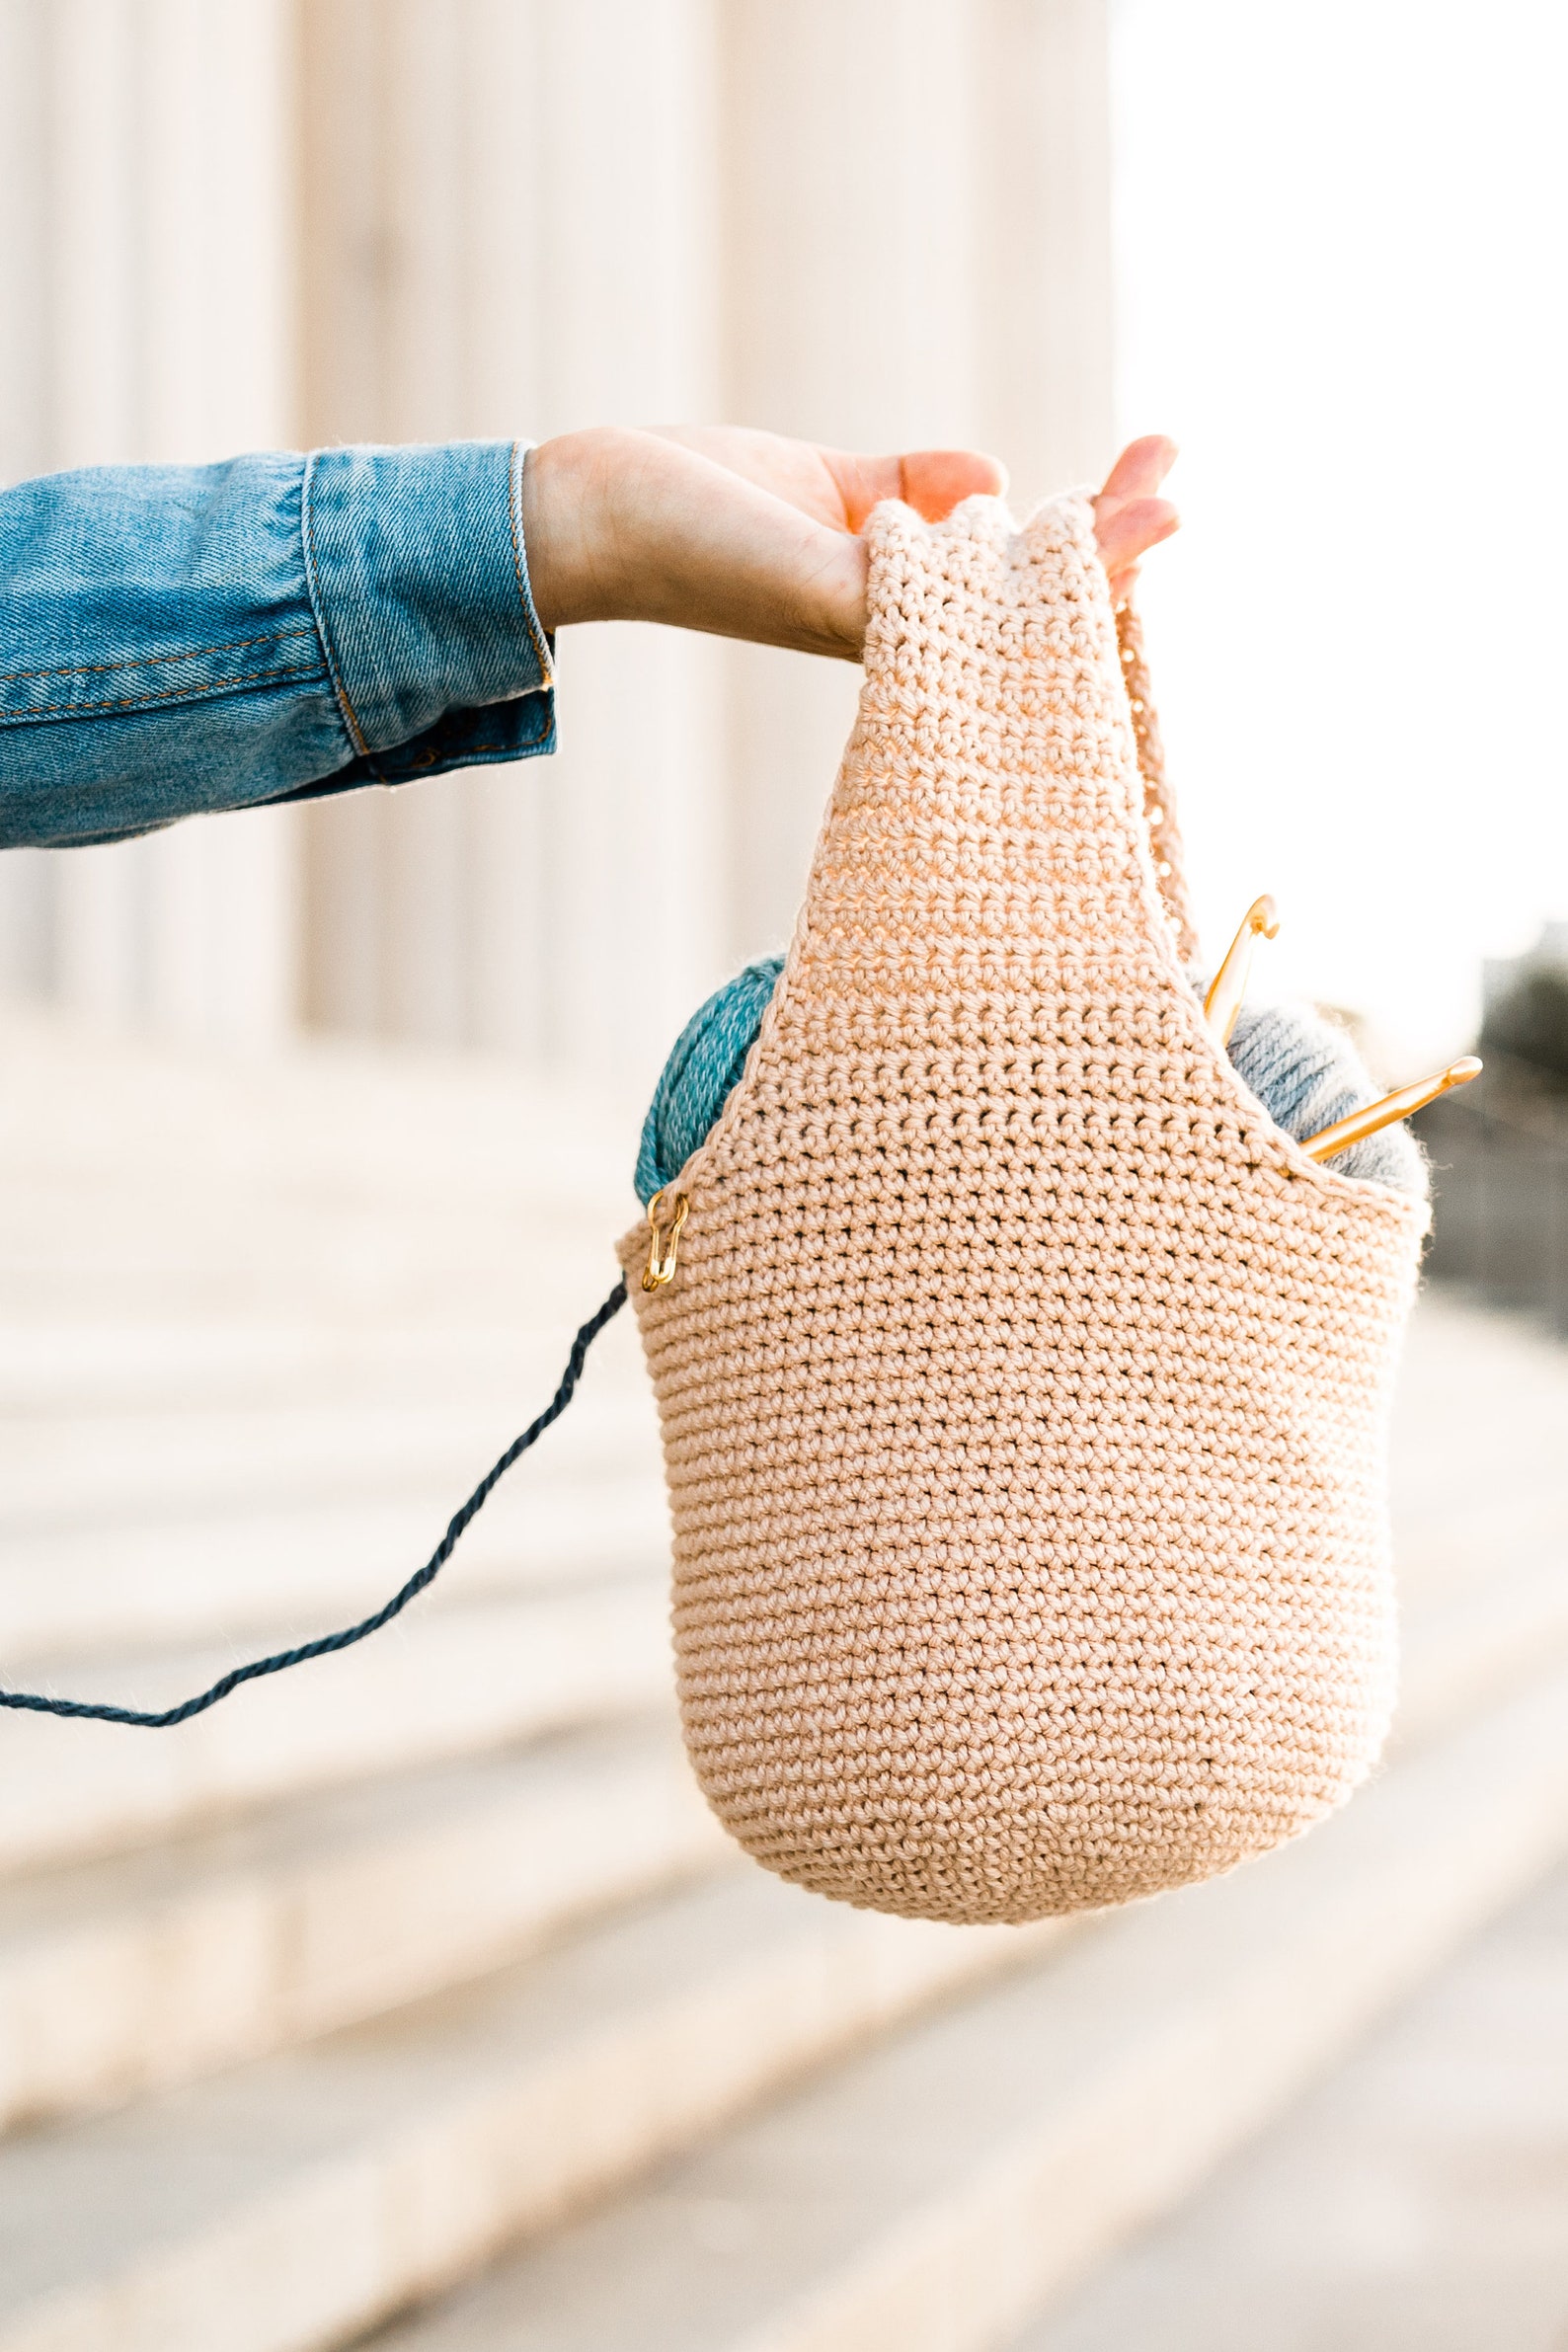 Crochet Project Bag Yarn Holder Yarn Basket Yarn Bag Easy - Etsy